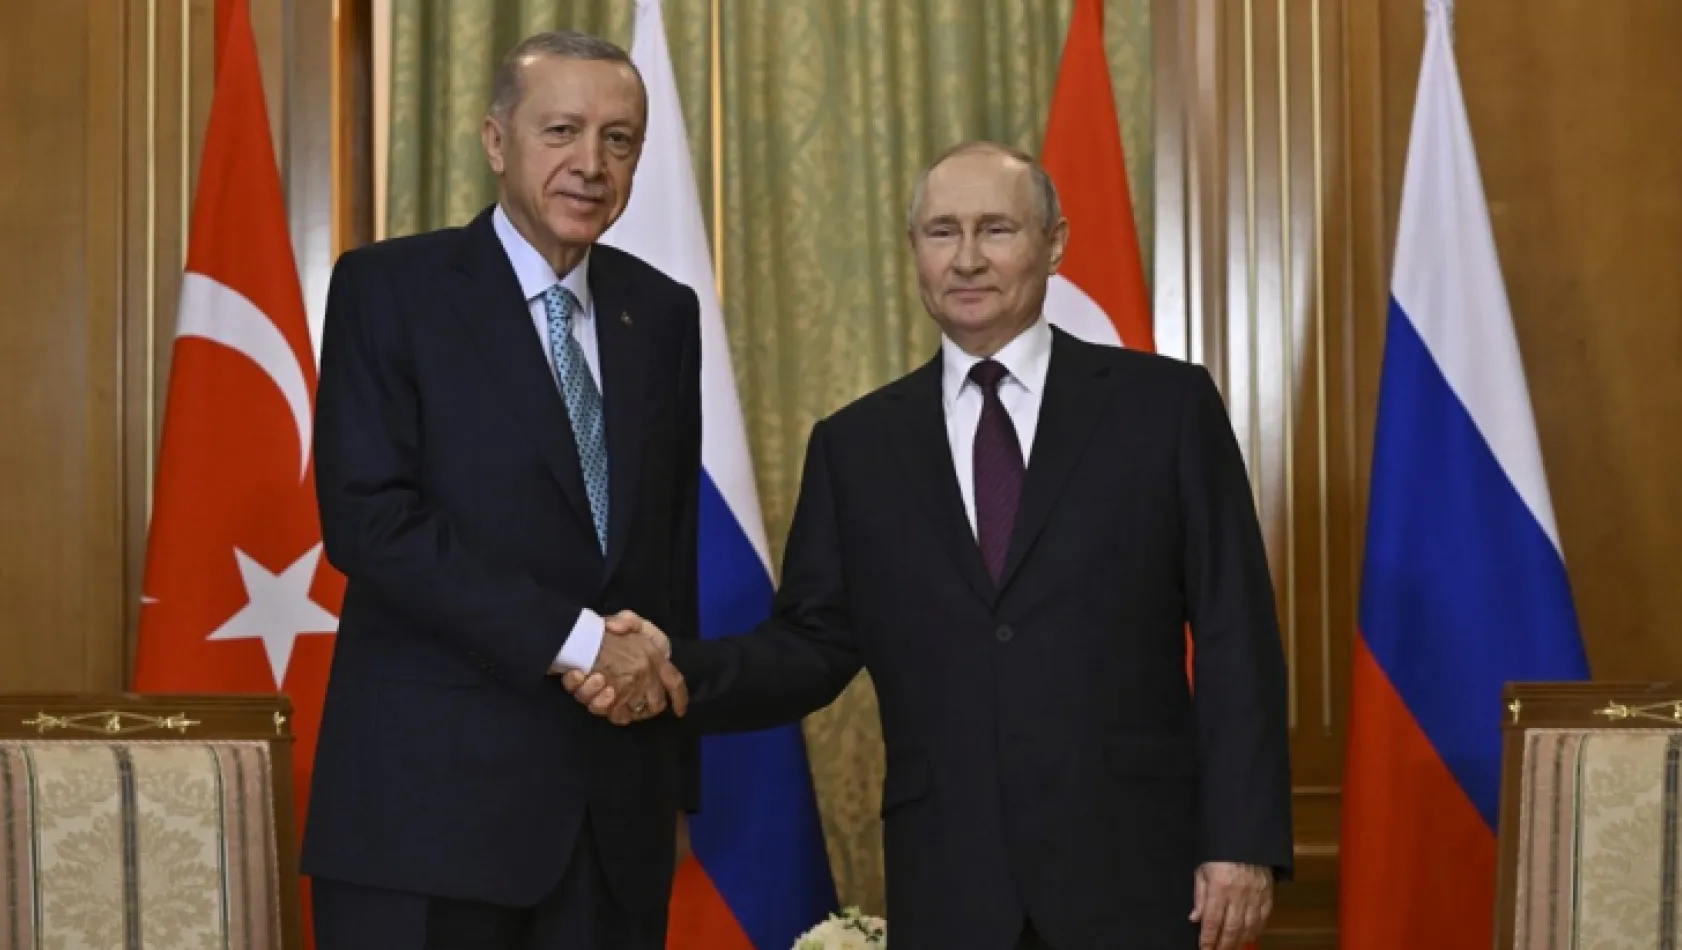 Soçi'deki kritik zirve bitti Erdoğan ve Putin'den ortak açıklama